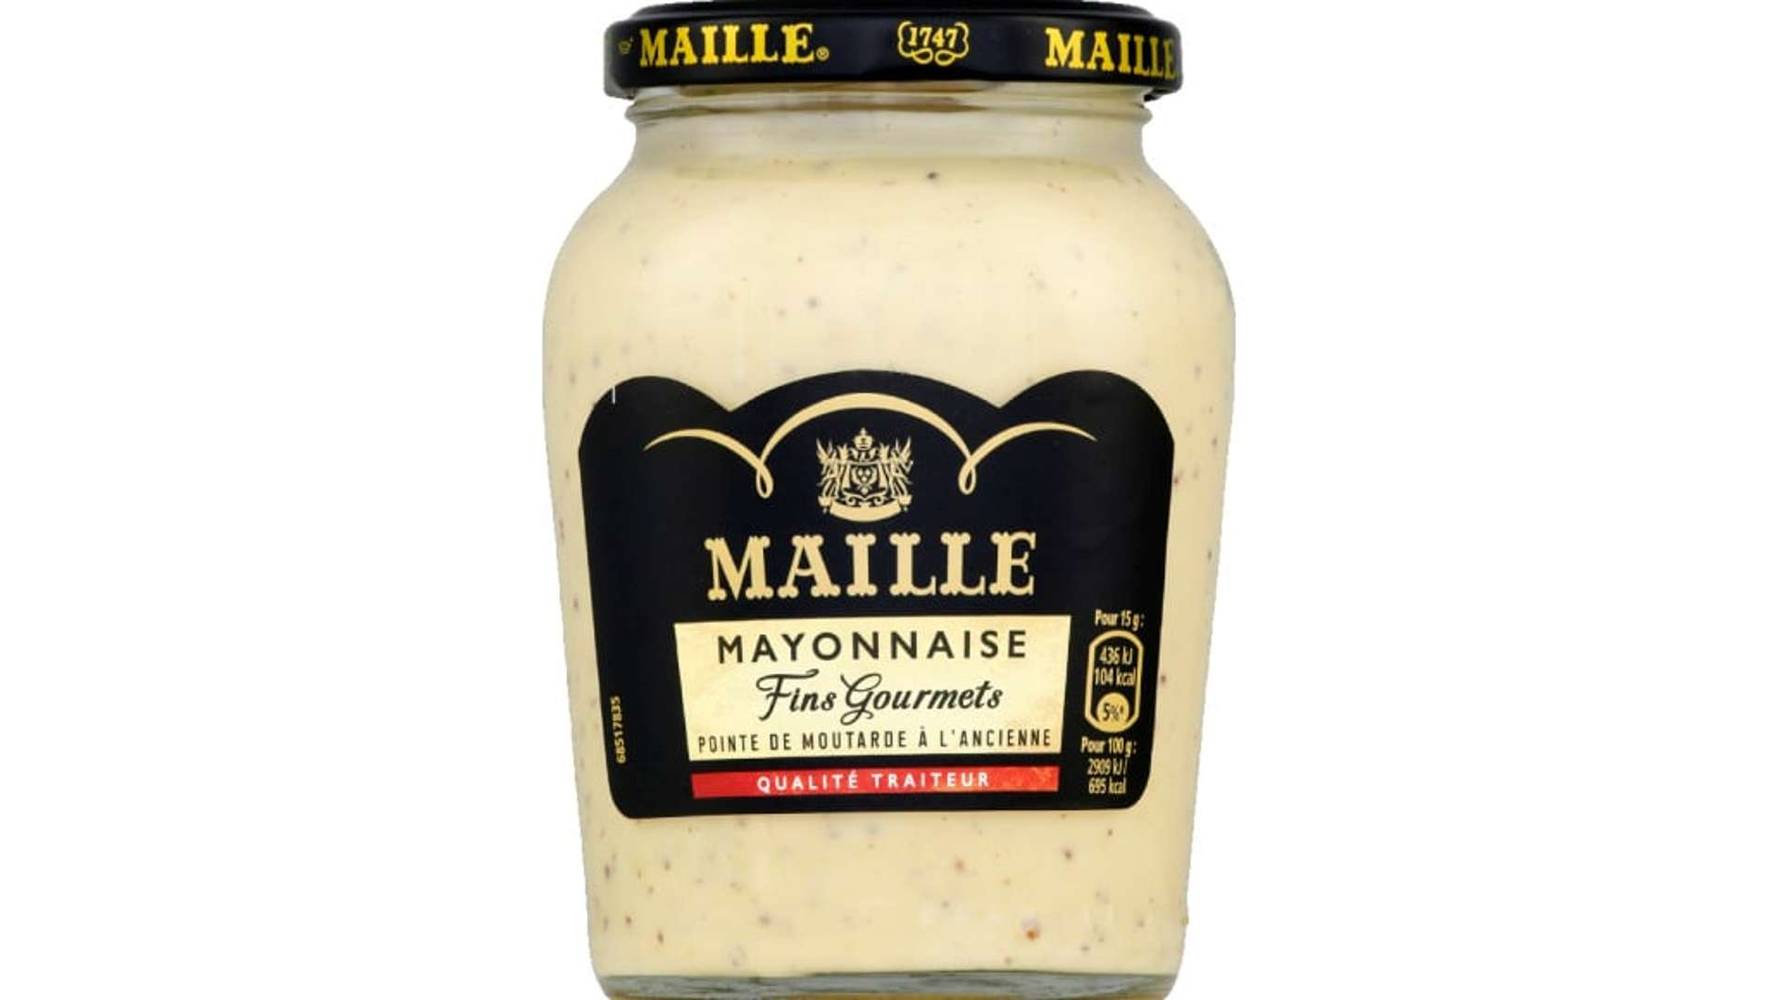 Maille Mayonnaise Fins Gourmets, Qualité Traiteur Le bocal de 320g